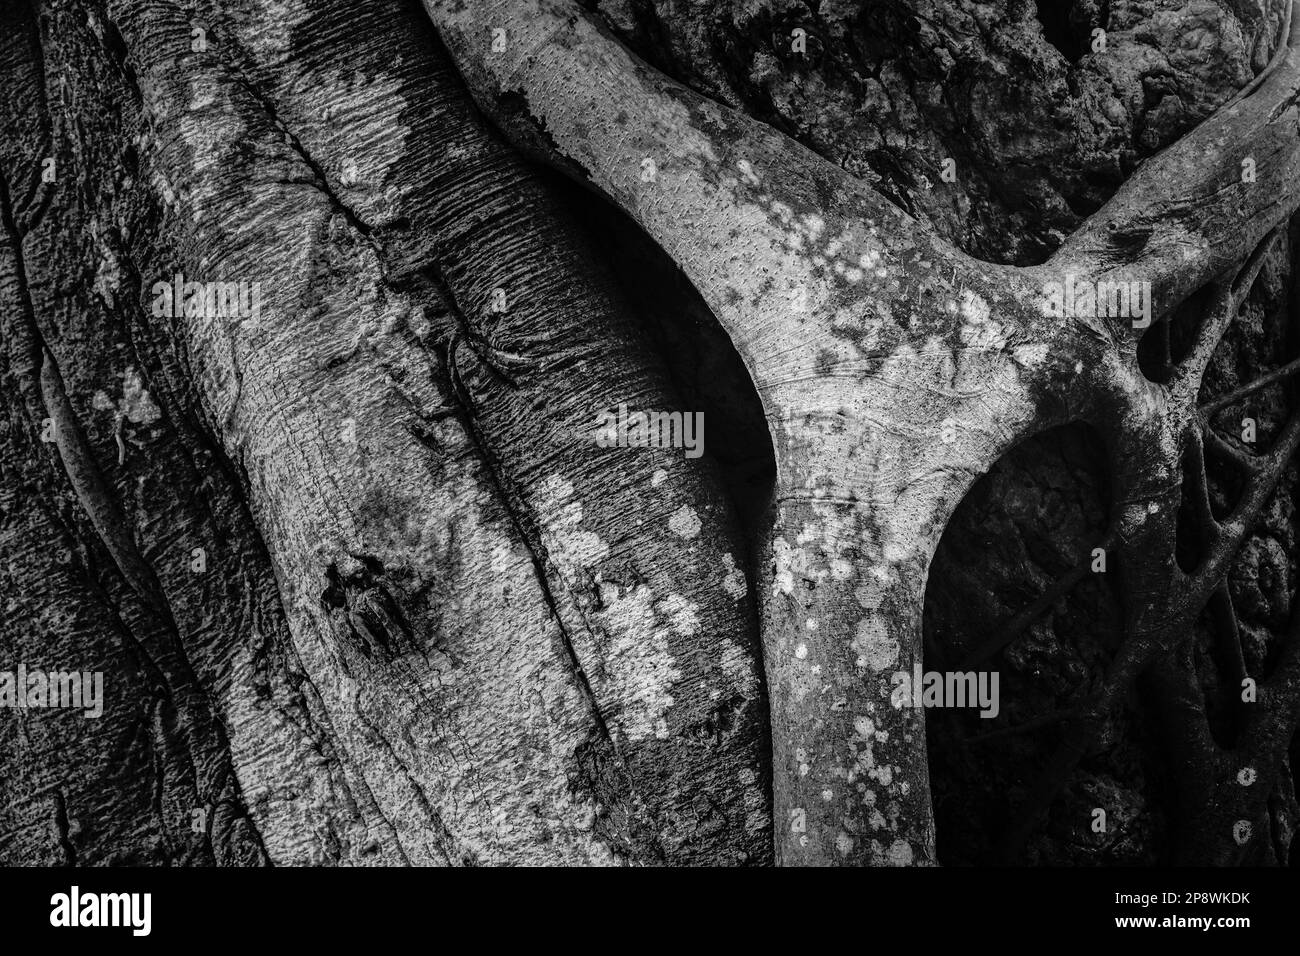 Immagine monocromatica in bianco e nero del vecchio tronco dell'albero con texture e carattere. Howrah, Bengala Occidentale, India. Foto Stock